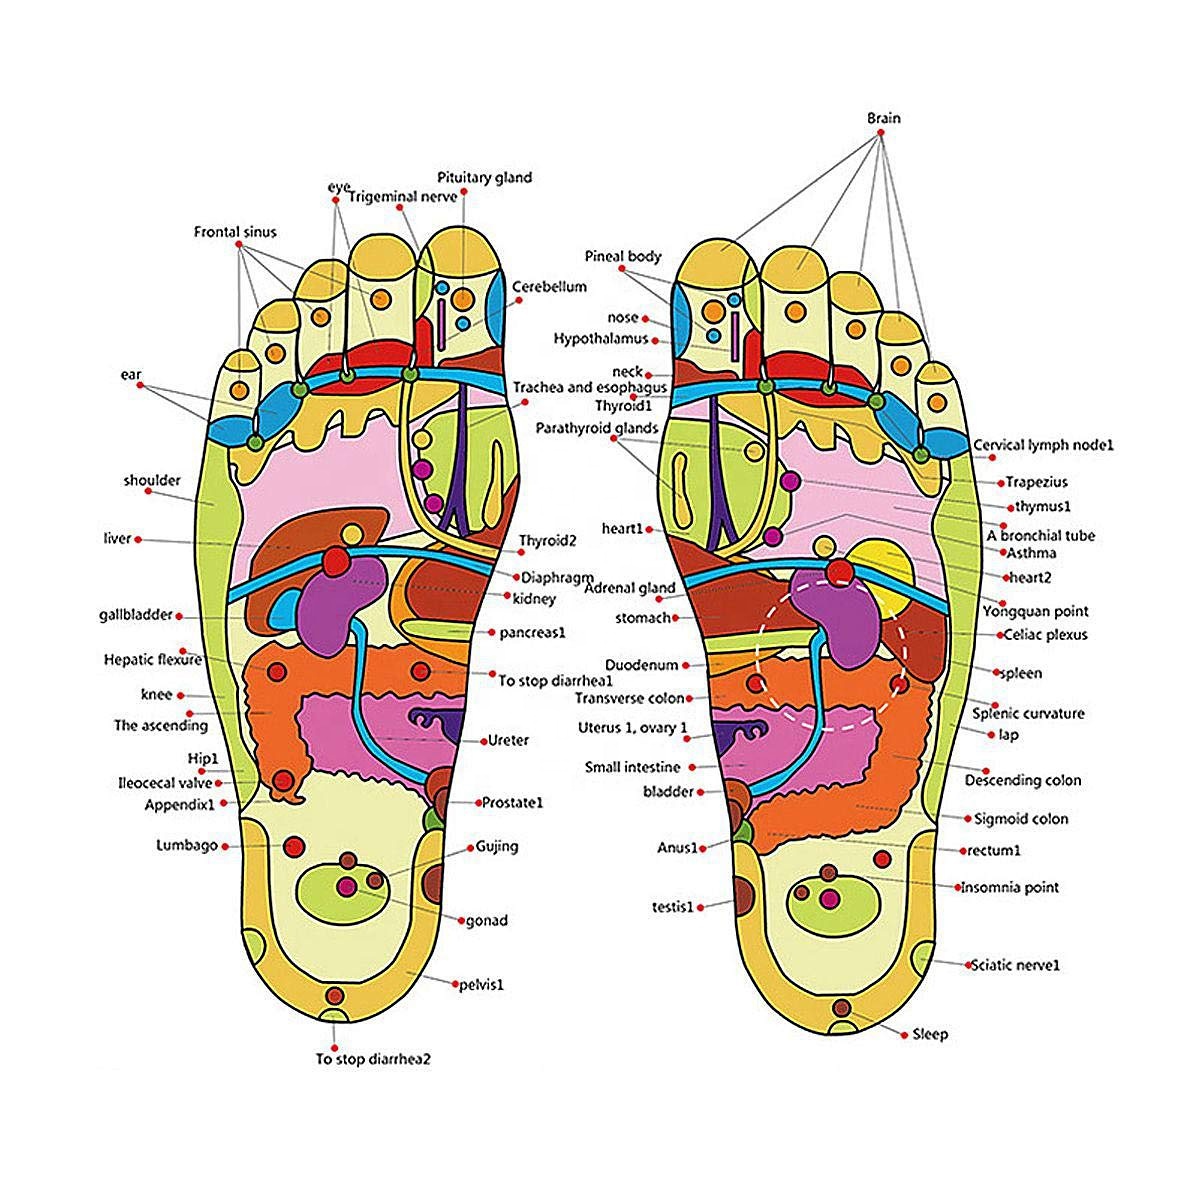 Sandaler med akupunktur fotmassage, Stl 44-45